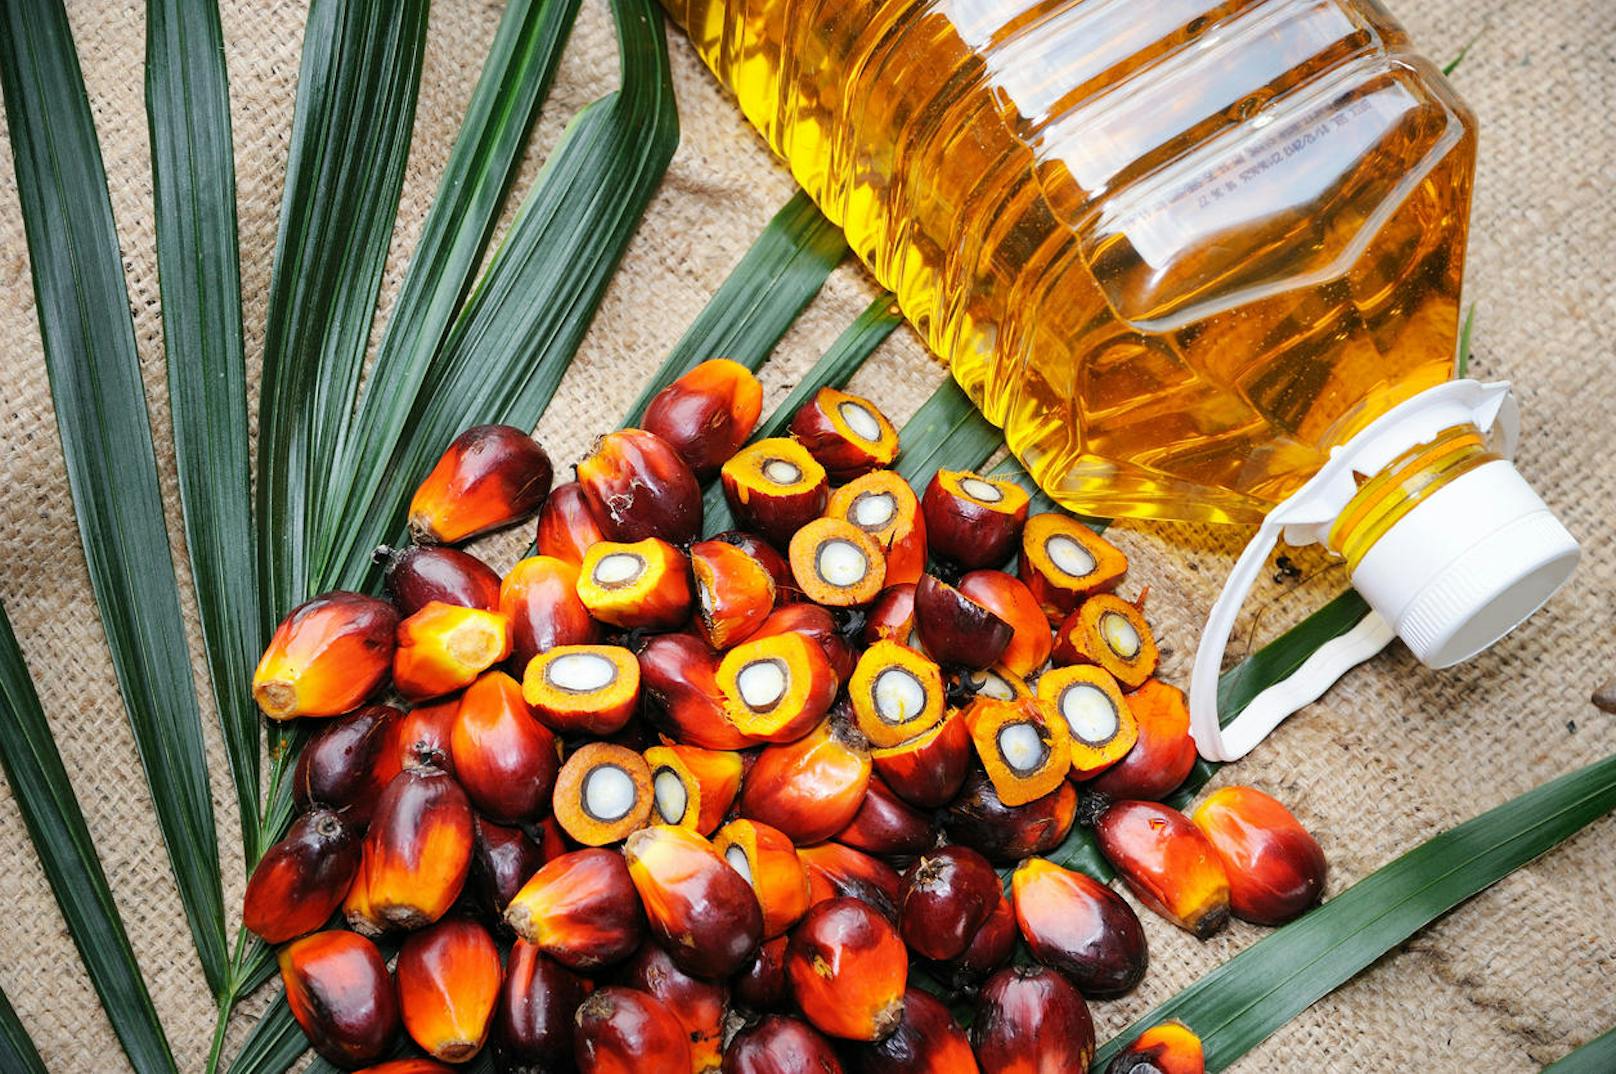 Palmöl, das einen hohen Anteil an gesättigten Fettsäuren hat, gilt aber als ungesund. Übermäßiger Verzehr kann sich negativ auf die Blutfettwerte und damit auf die Wirkung von Insulin im Körper auswirken. Dadurch erhöht sich das Risiko, an Diabetes zu erkranken.